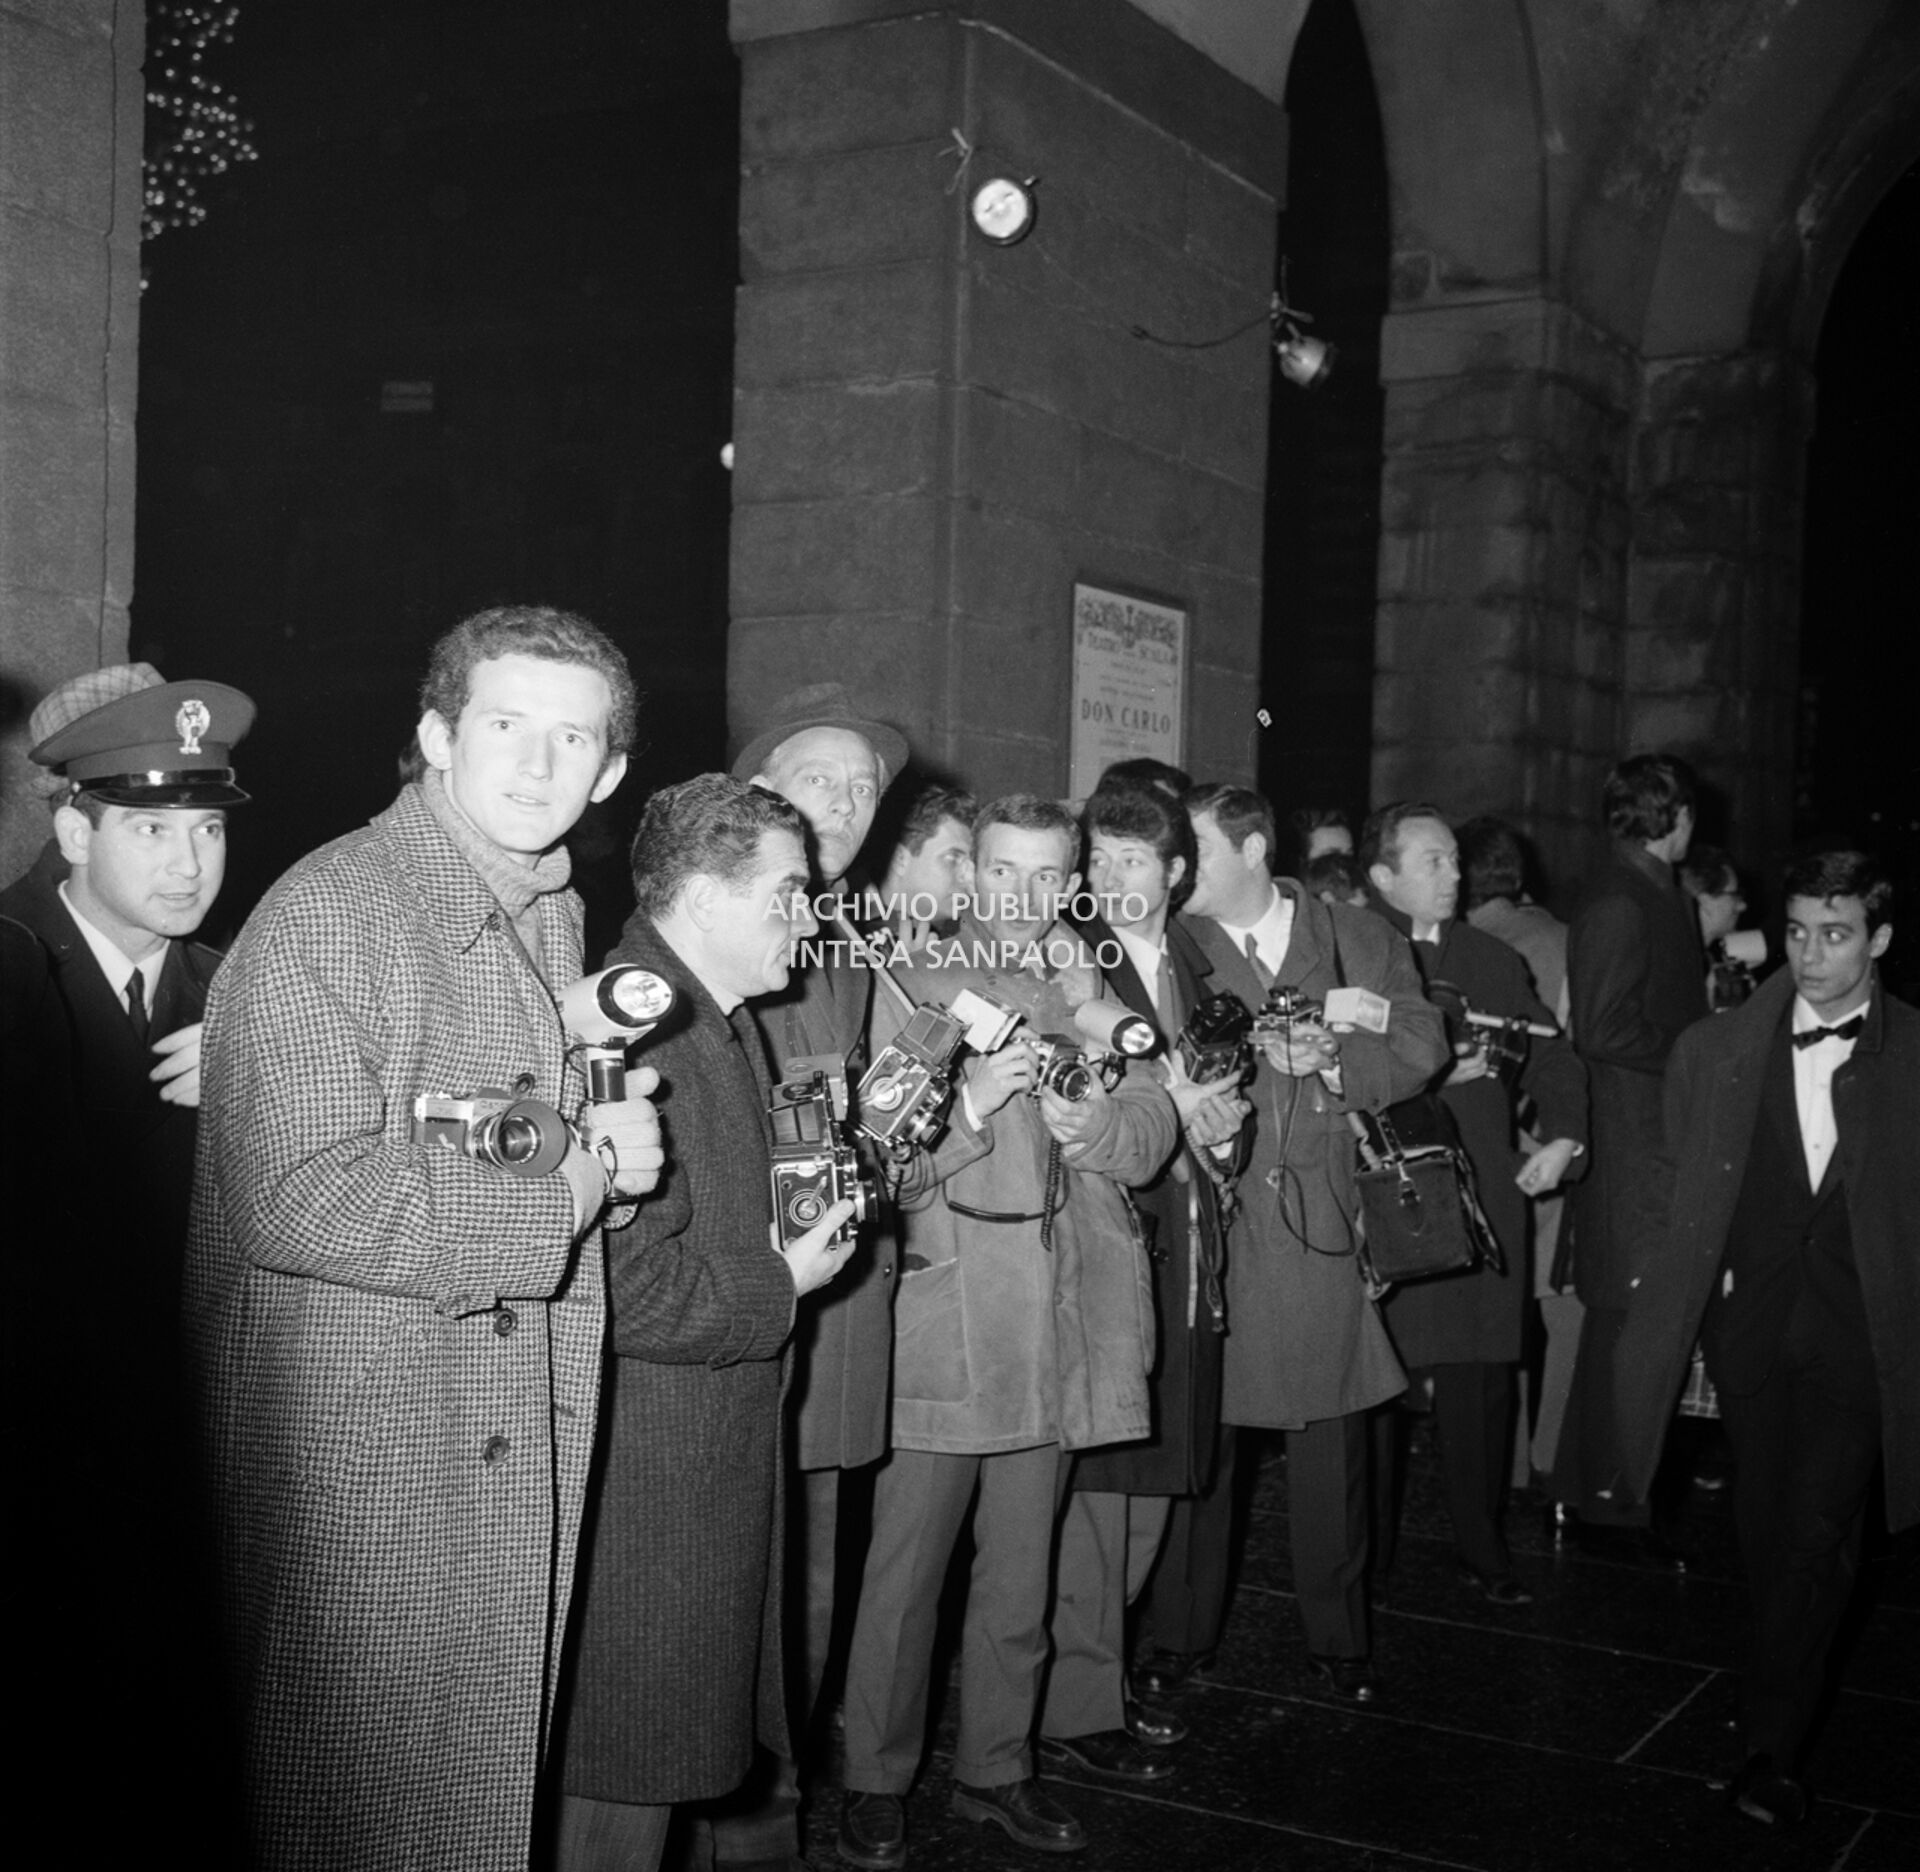 Fotografi assiepati fuori dal Teatro alla Scala la sera dell'inaugurazione della stagione lirica 1968-1969, che fu aspramente contestata, da giovani del Movimento studentesco, con lancio di uova marce e vernice sul pubblico in entrata.